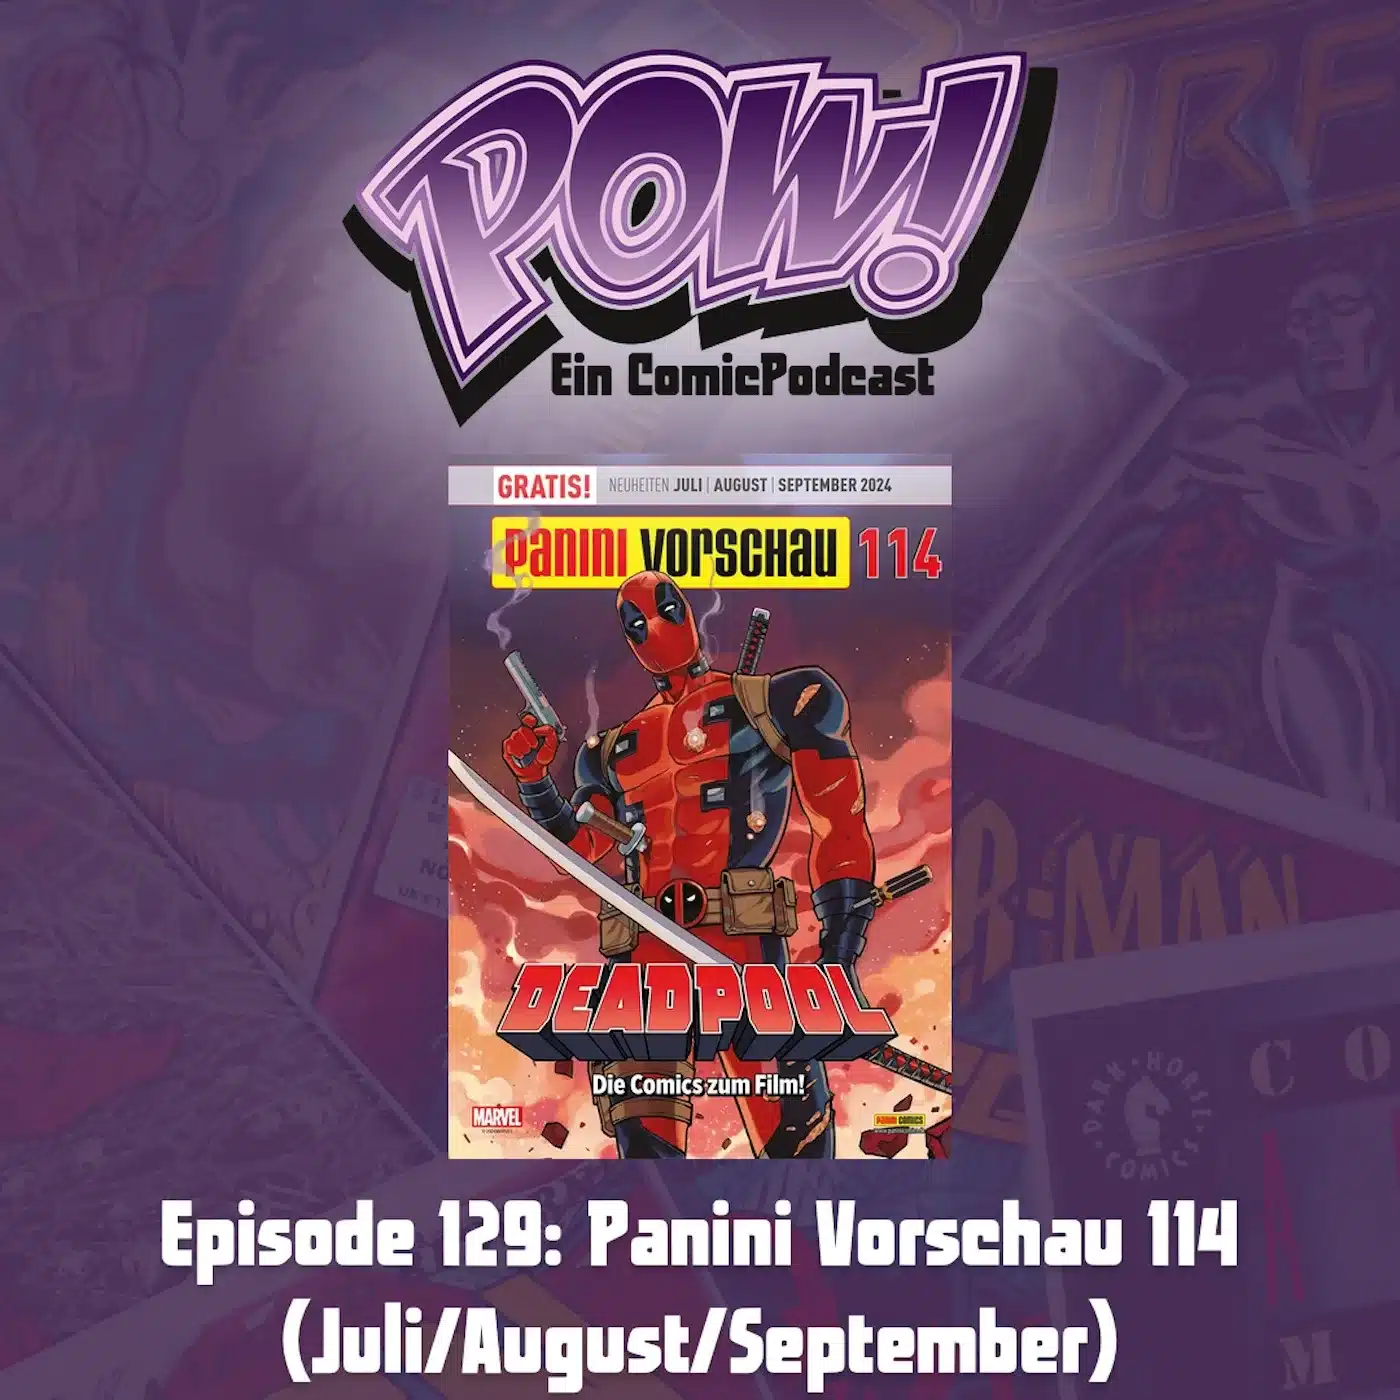 Mehr über den Artikel erfahren Episode 129: Panini Vorschau 114 (Juli/August/September)